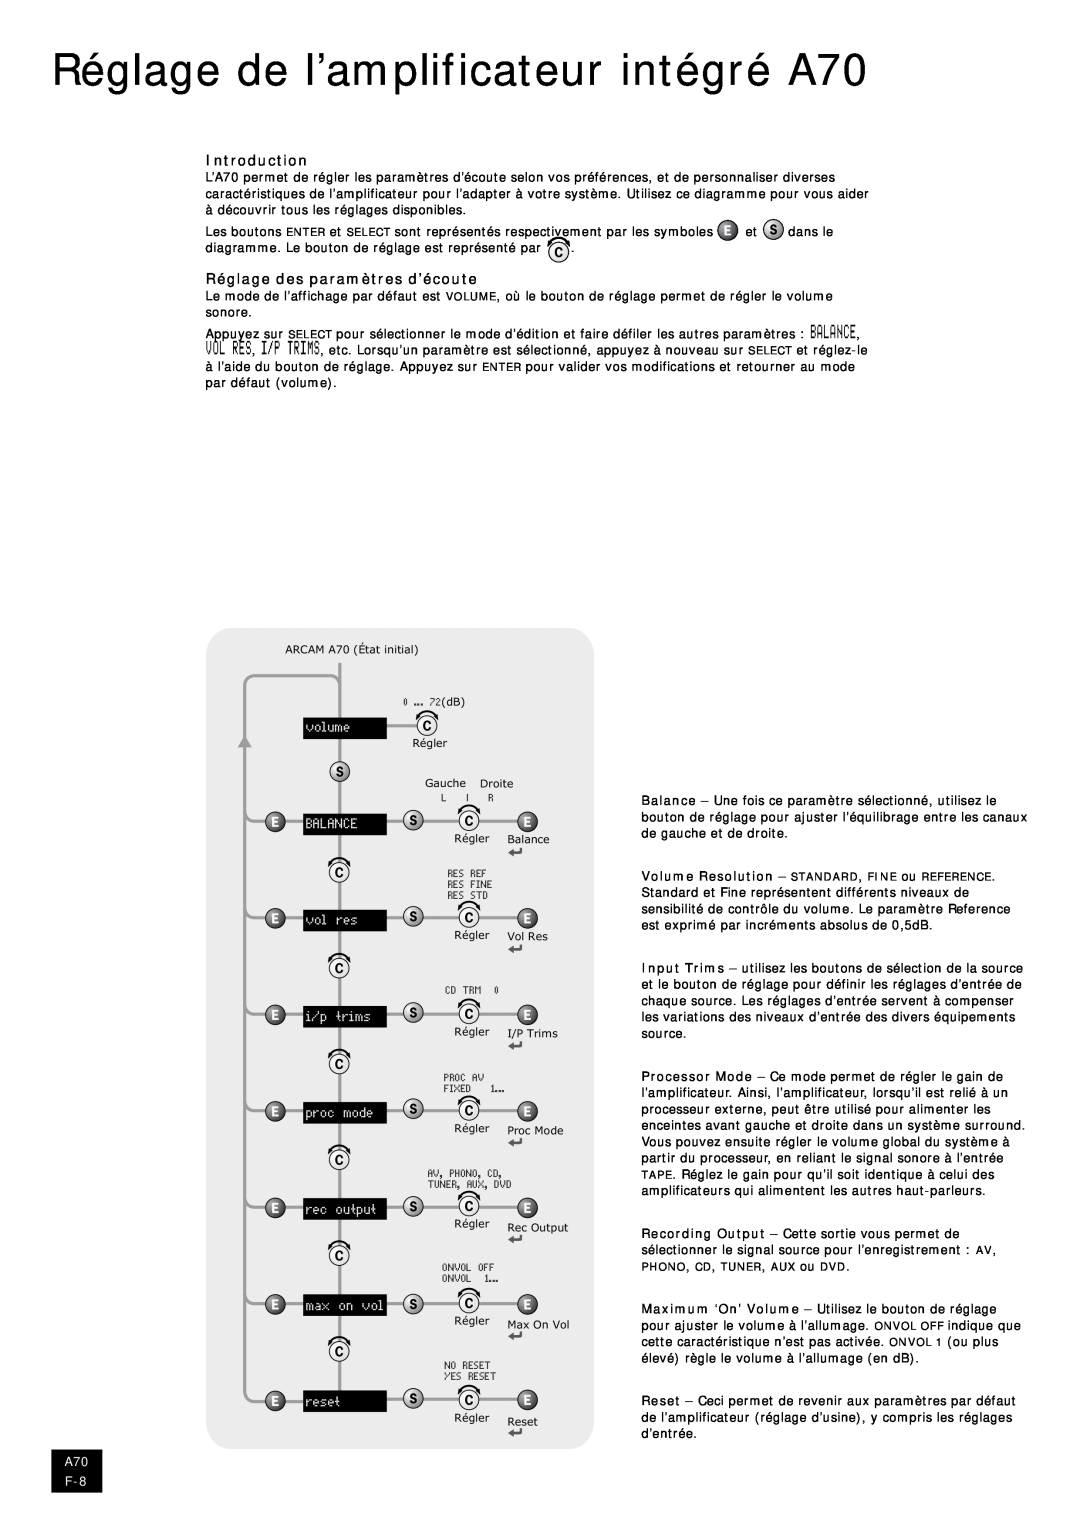 Arcam manual Réglage de l’amplificateur intégré A70, Introduction, Réglage des paramètres d’écoute 